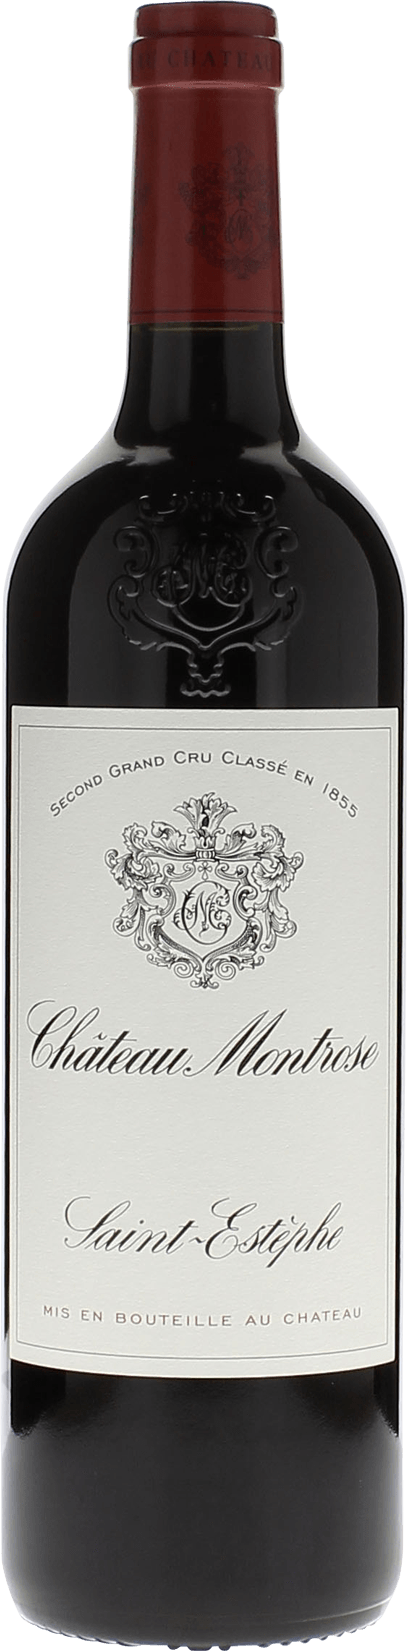 Montrose 2016 2me Grand cru class Saint-Estphe, Bordeaux rouge